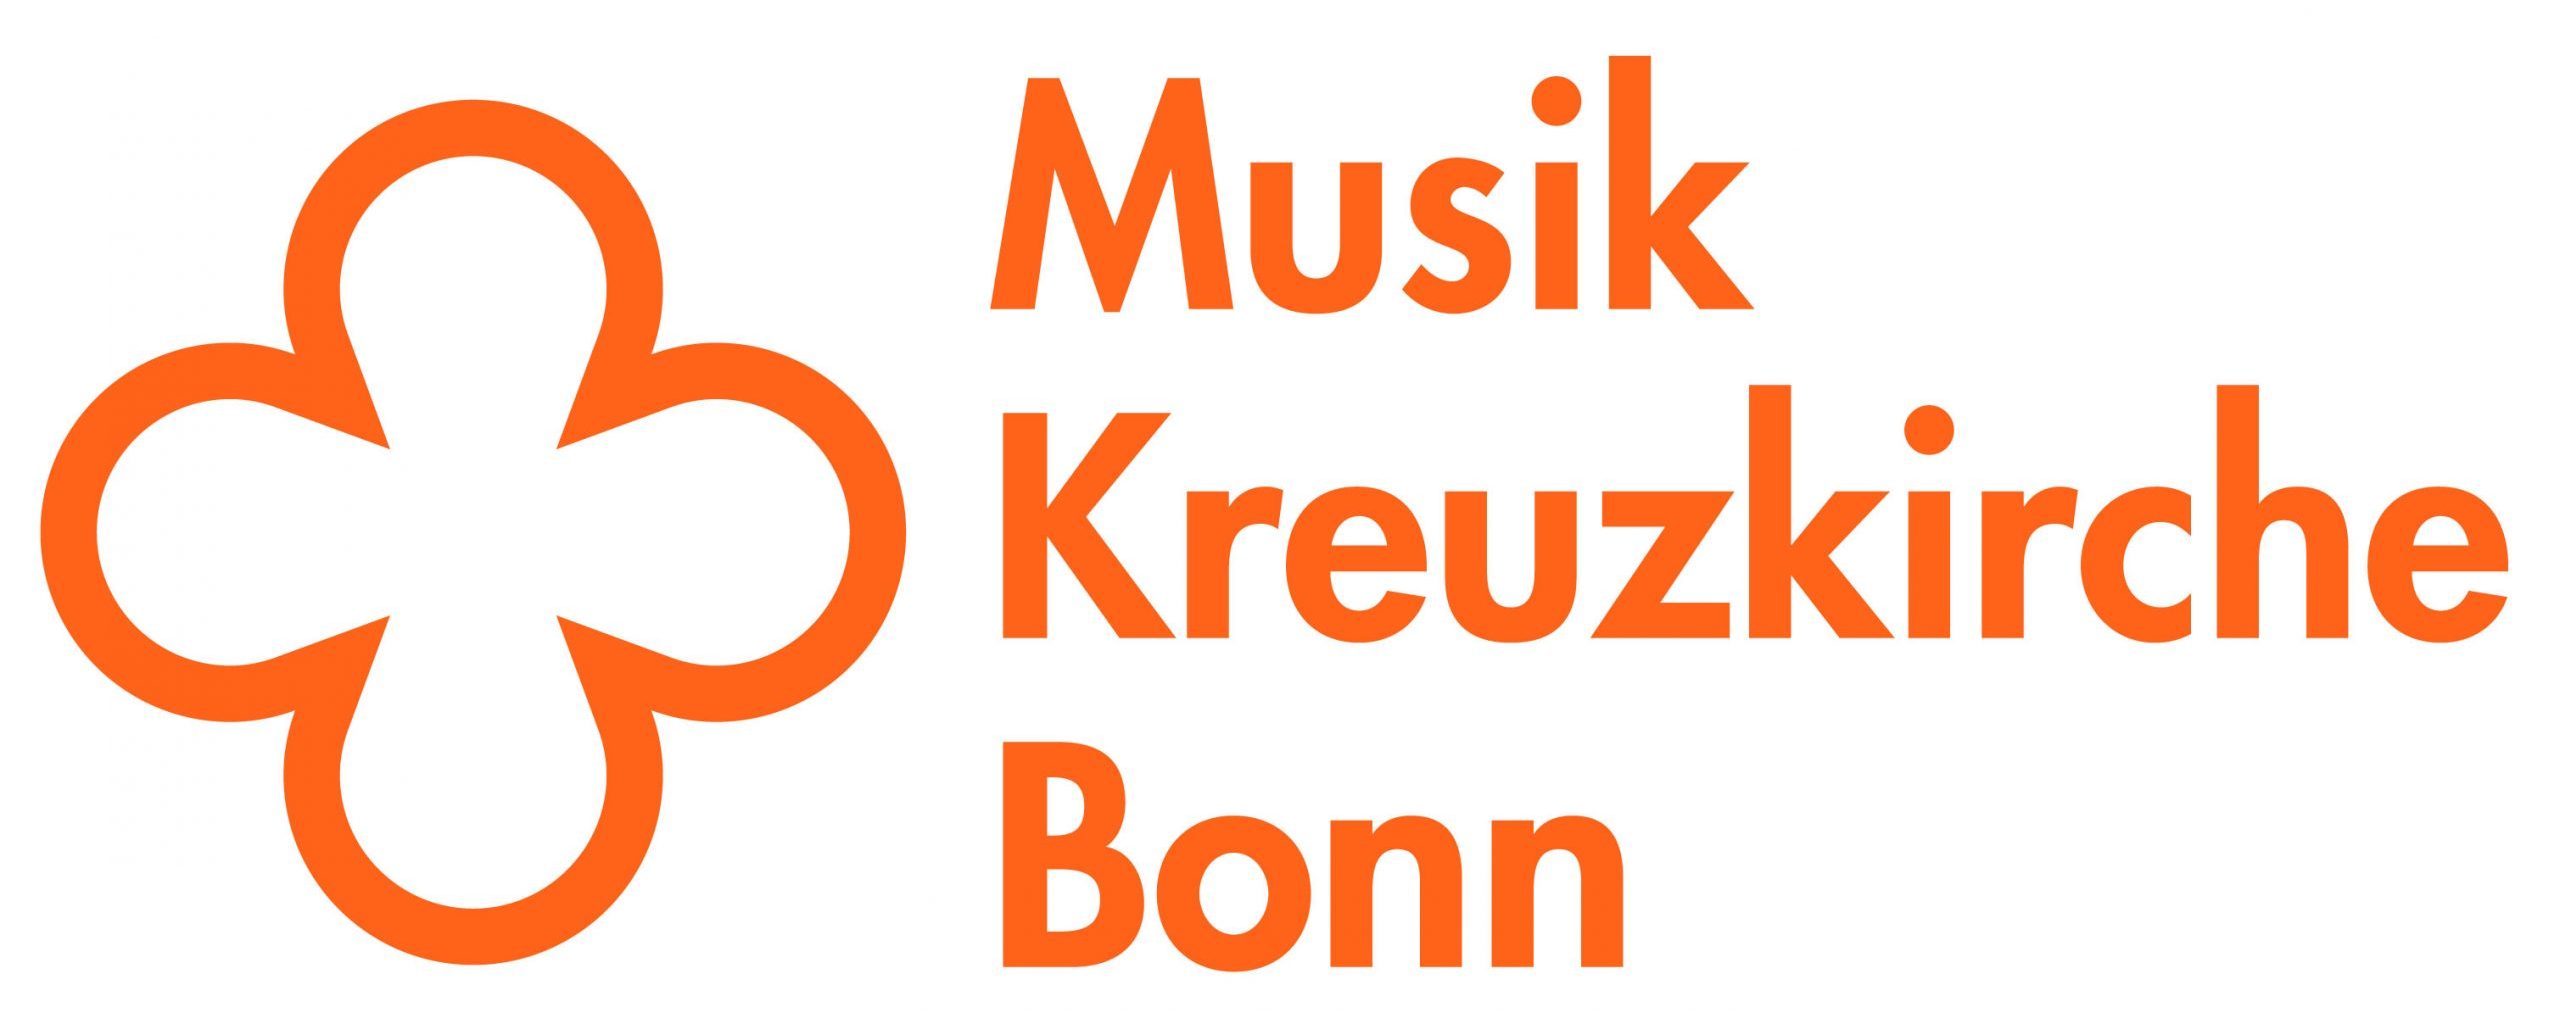 Blog der Kreuzkirchenmusik Bonn